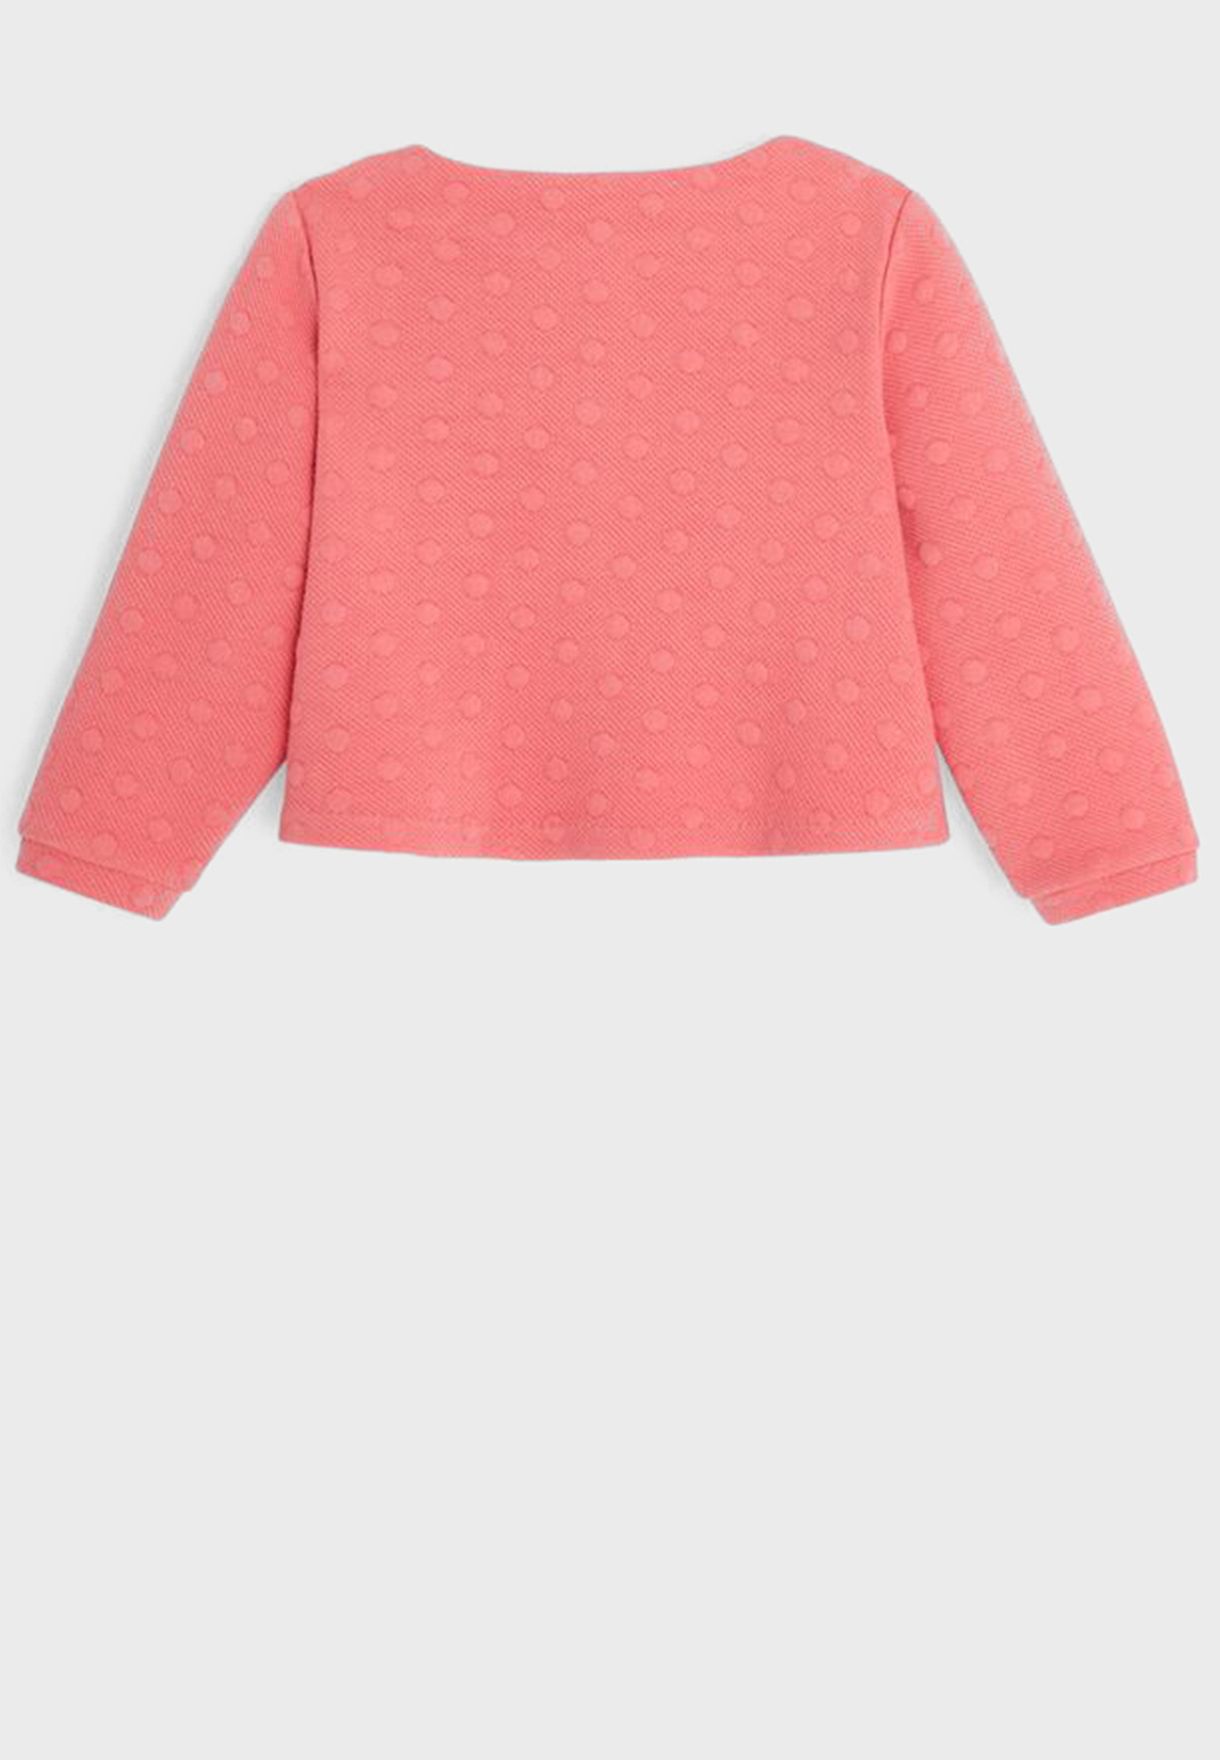 Infant Embossed Polka Dot Sweatshirt